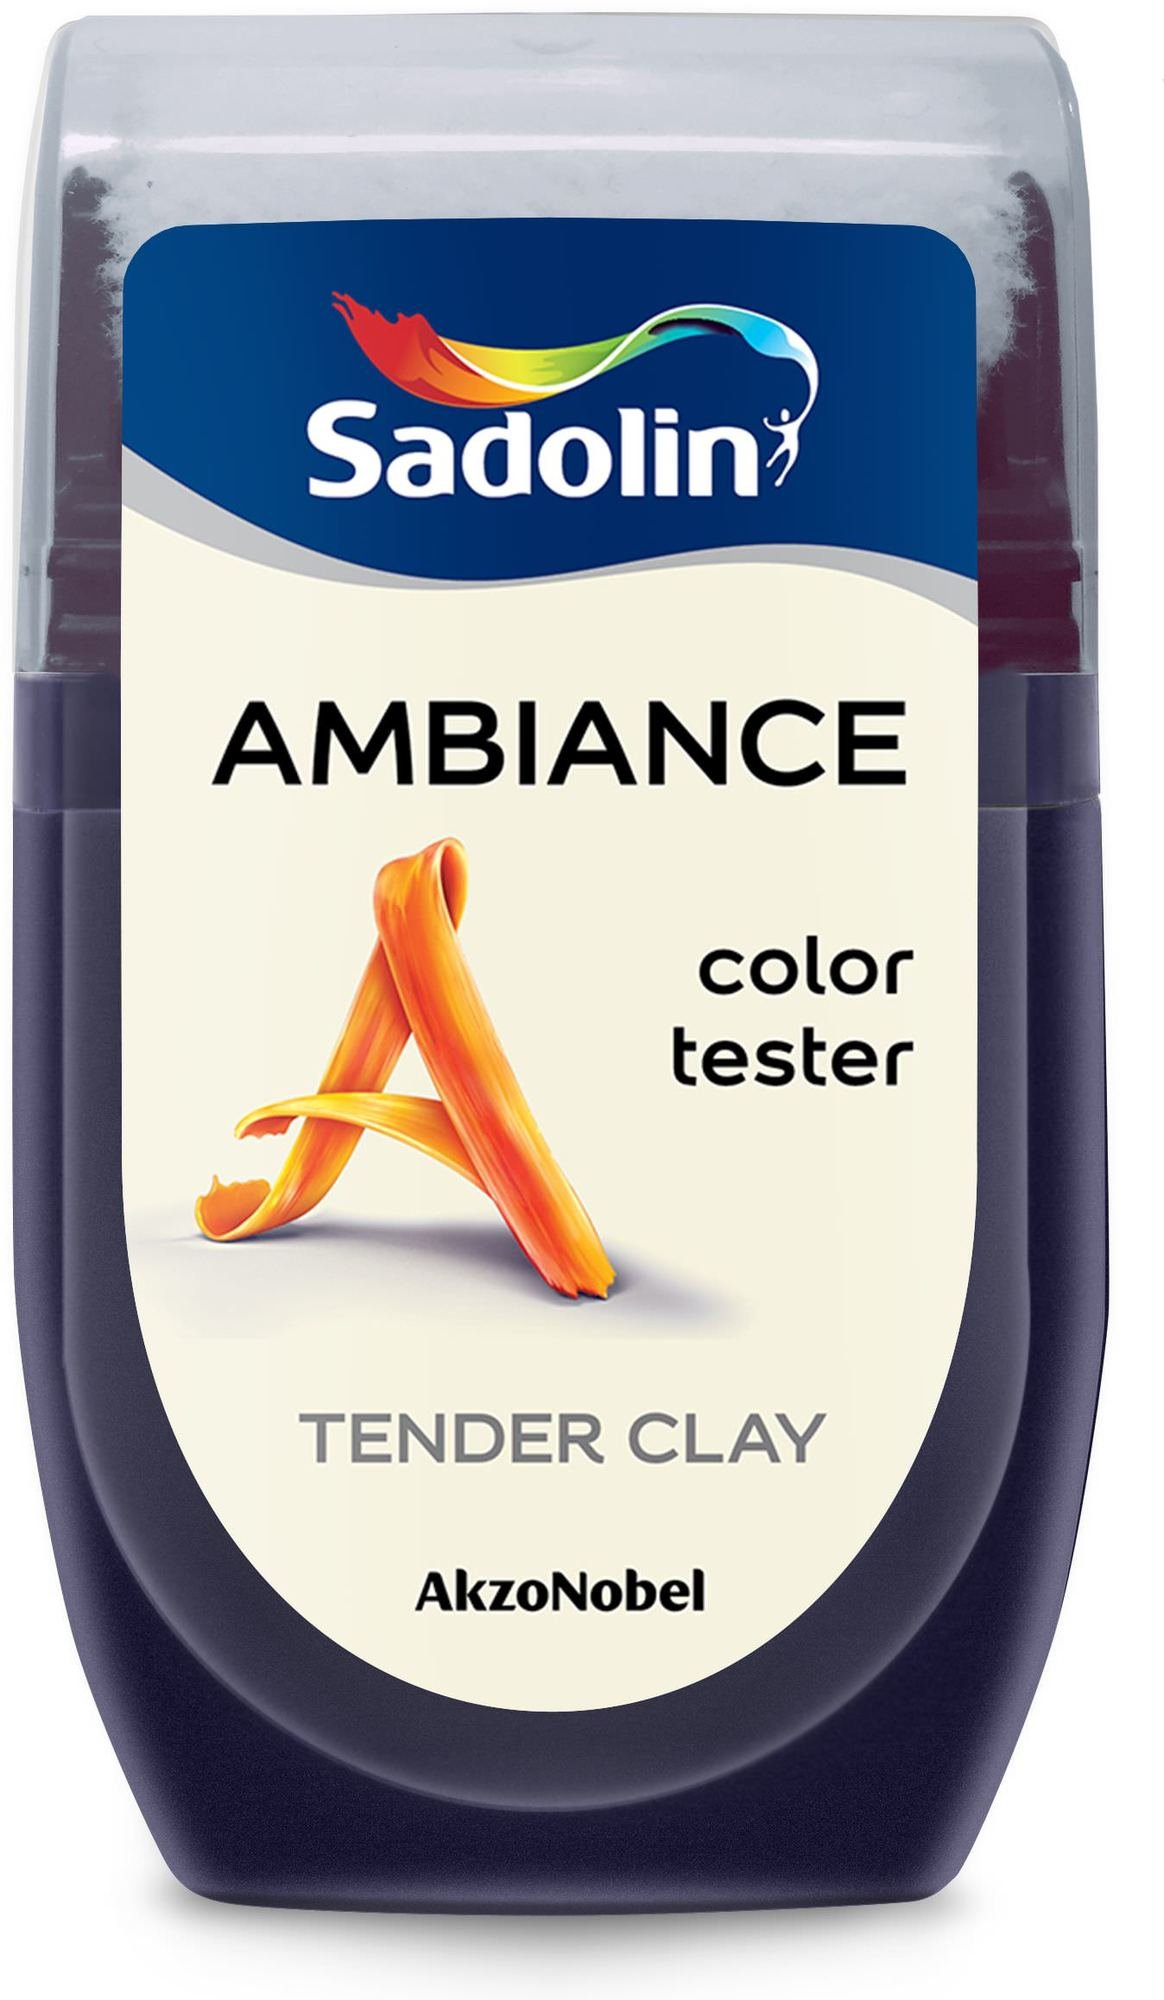 sp. testeris SADOLIN AMBIANCE TENDER CLAY, visiškai matiniai, 30 ml